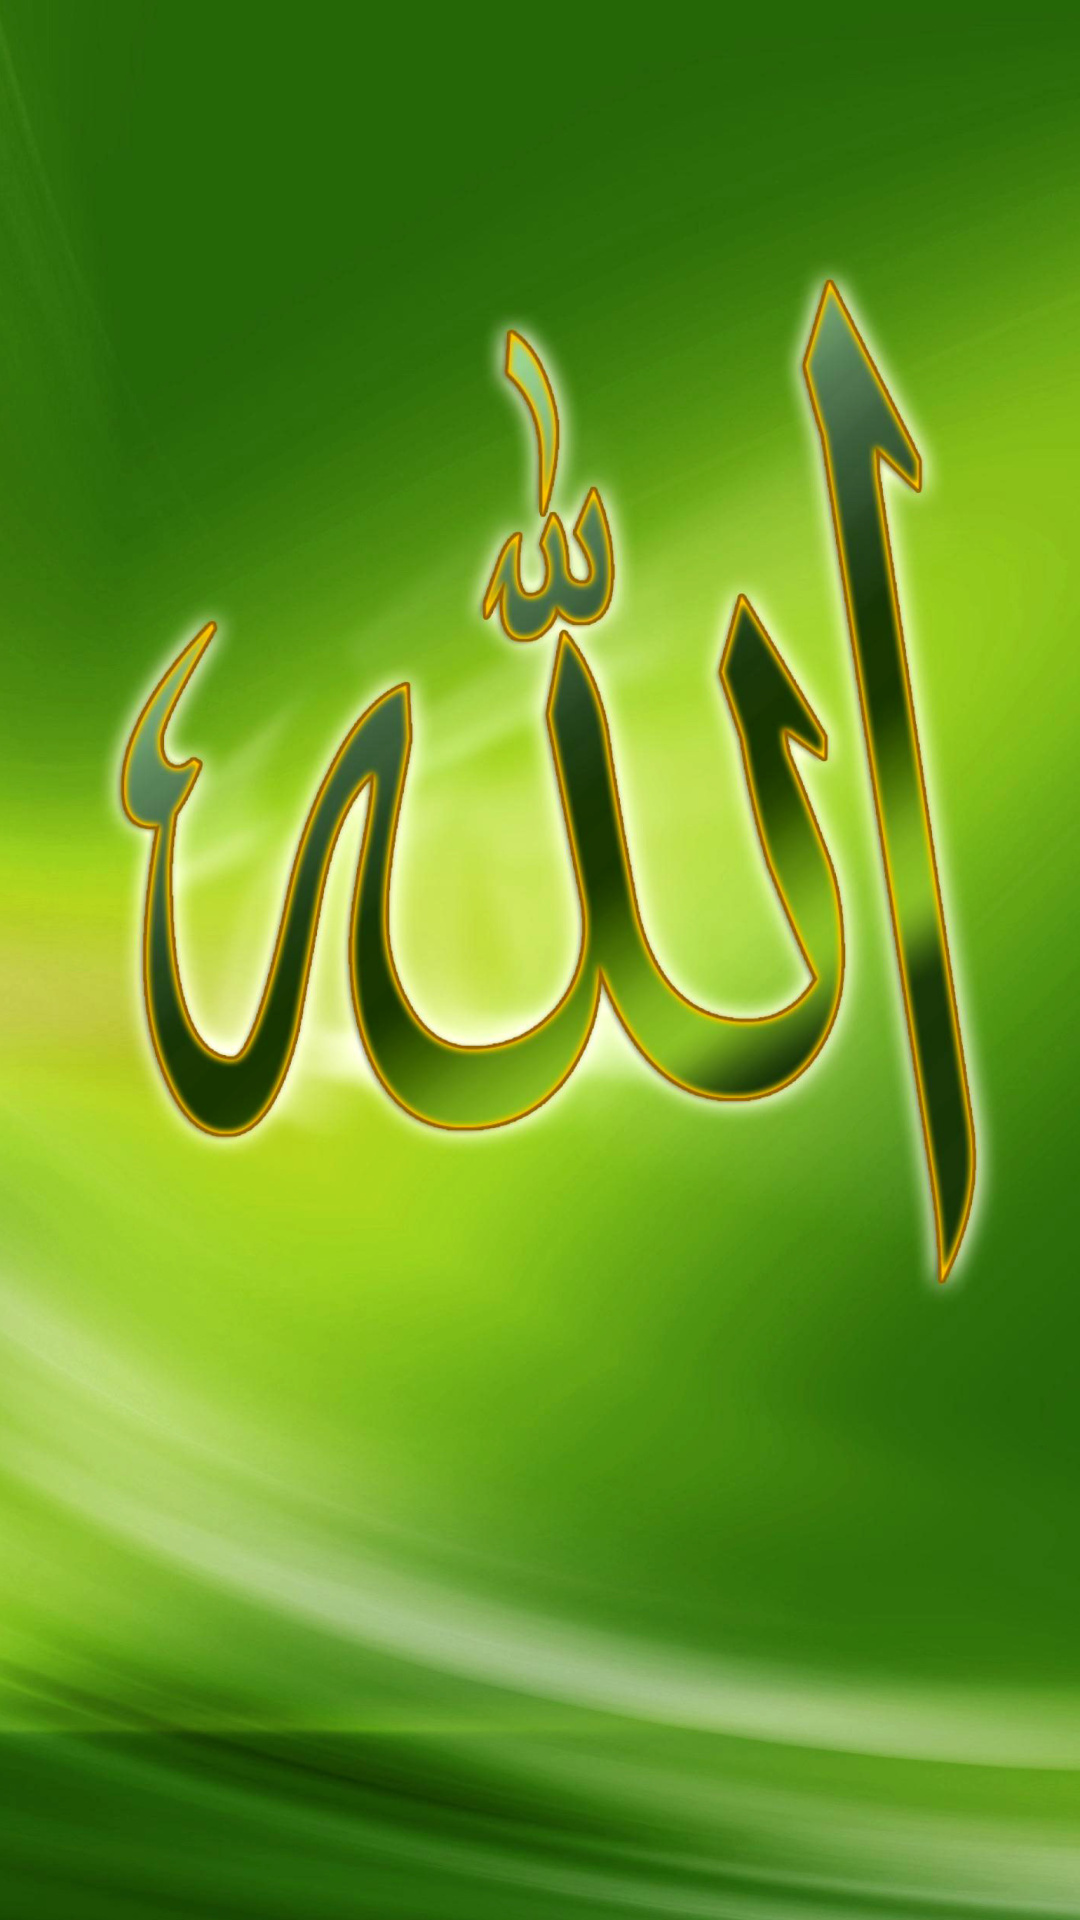 Allah | Islam Allah